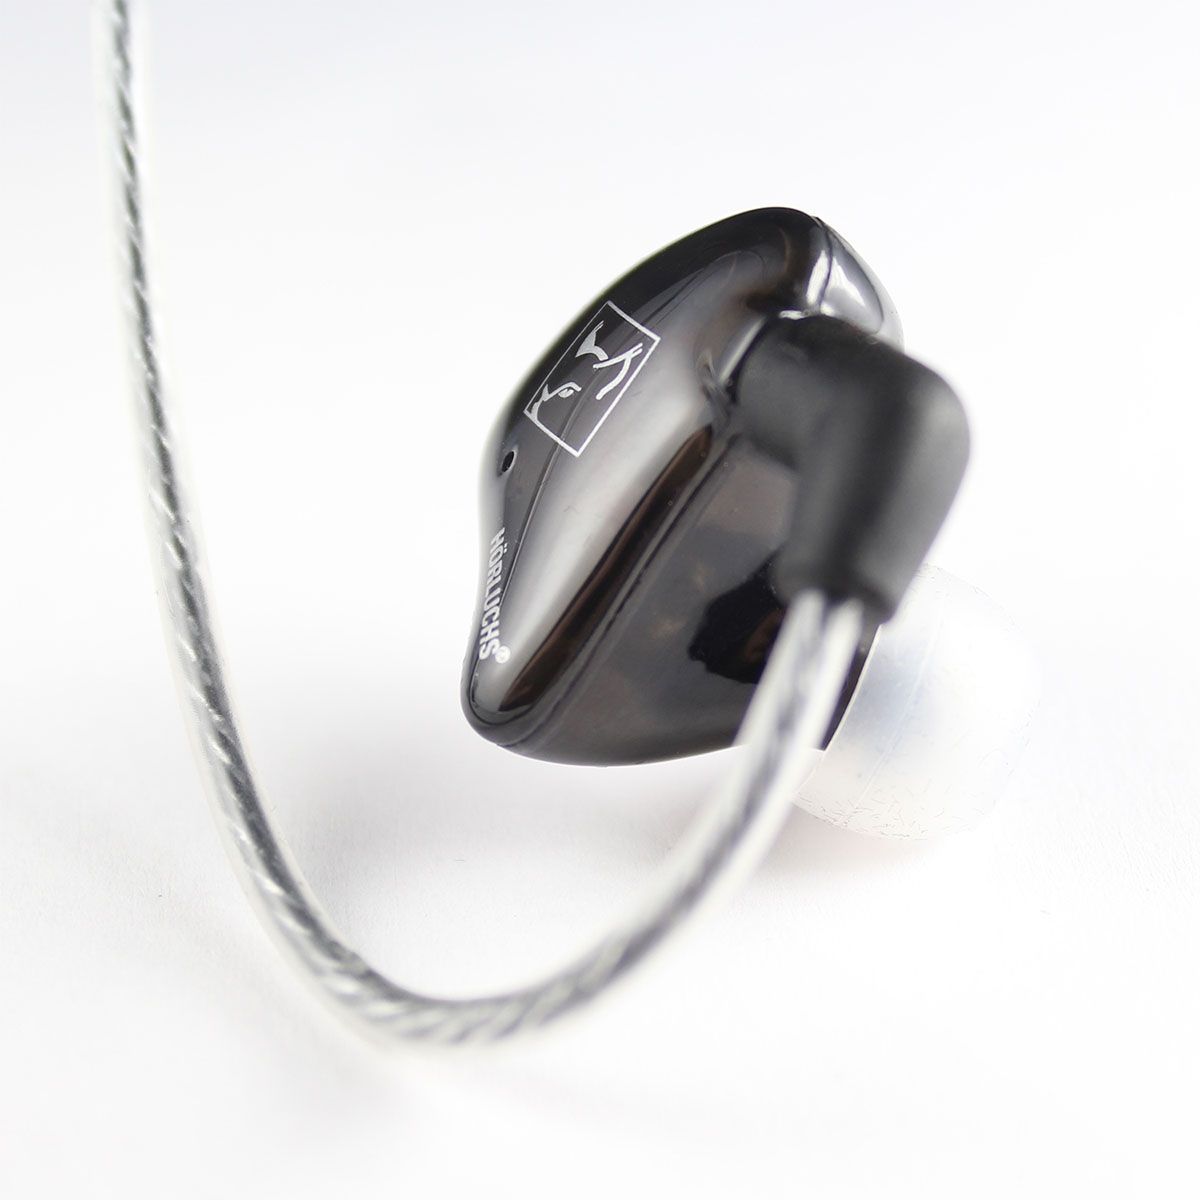 Hörluchs EasyUp In-Ear Hörer 1 Wege Universeller Hörer für den Einstieg